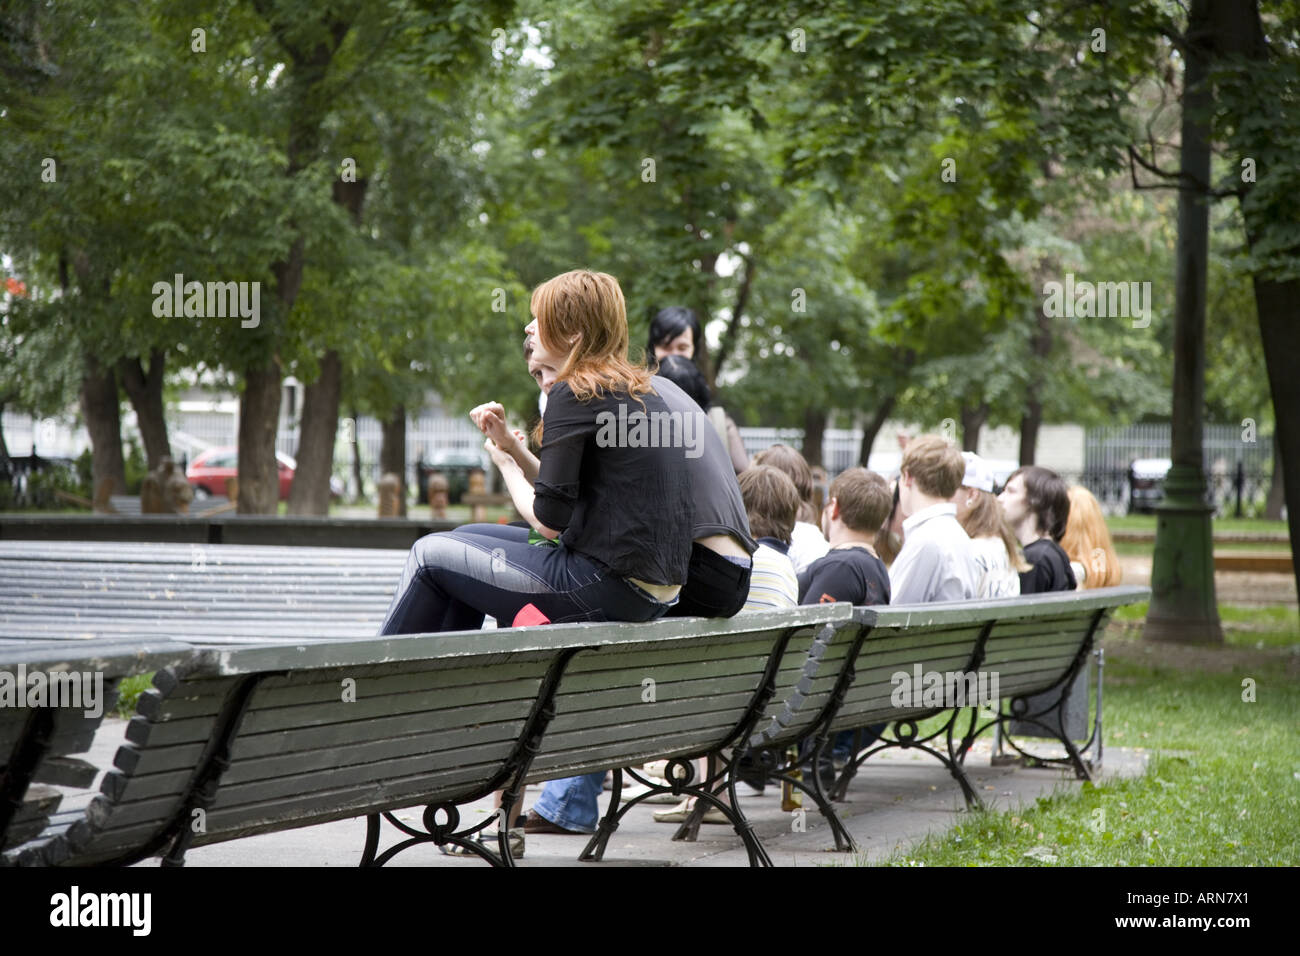 Spaß im Park die Studierenden am Ende des Begriffs Moskau Russland Osteuropa entspannend Stockfoto